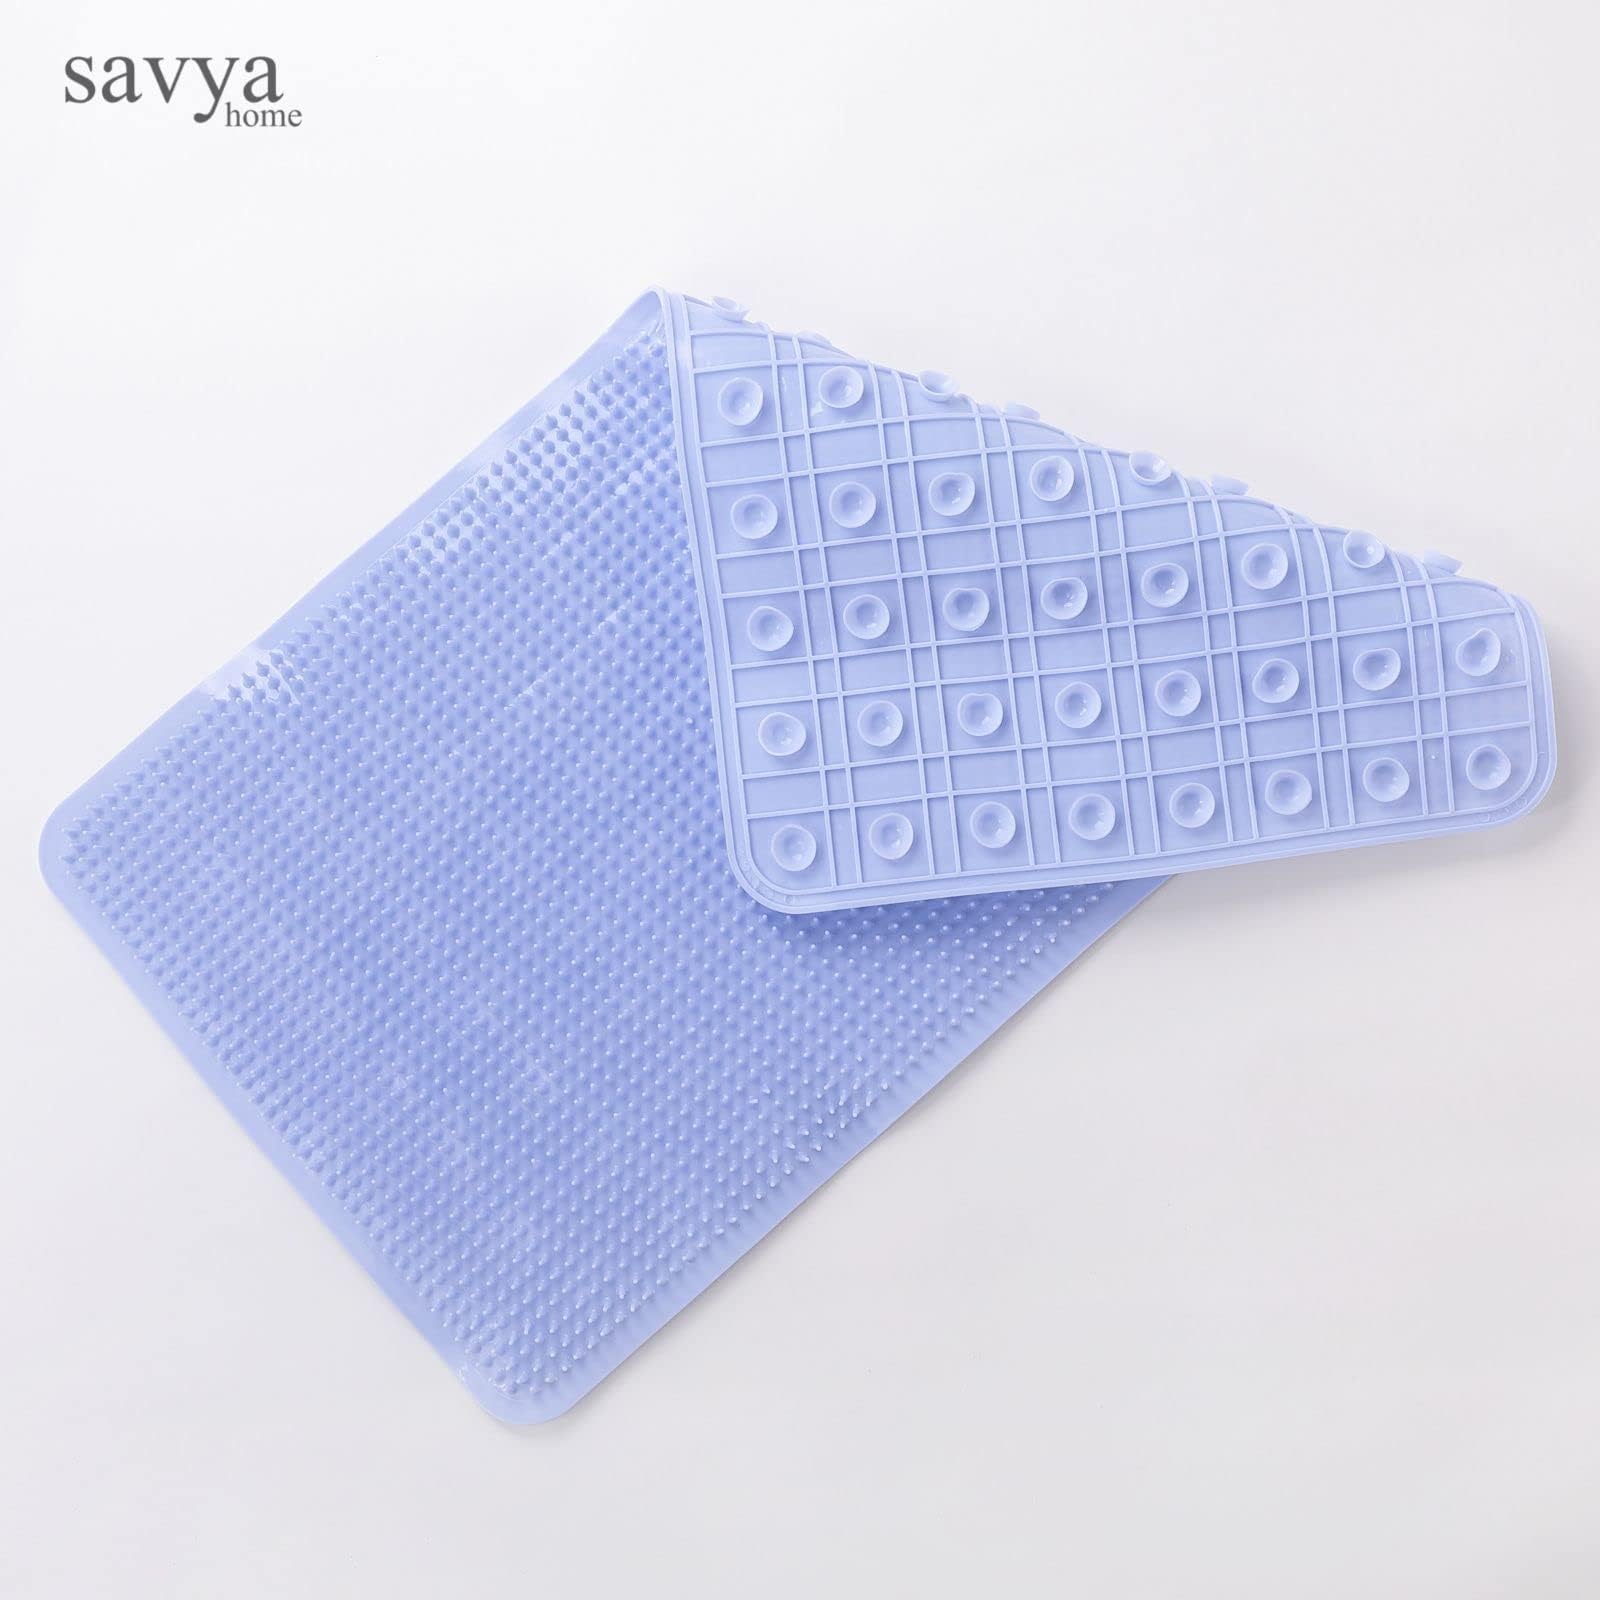 Savya Home Pack of 2 Bathroom Mat PVC/Non-Slip & Soft/Light Weight Mat for Living Room, Anti Skid Mat for Bathroom Floor/Shower Mat/Multipurpose Mat, Blue & Pink